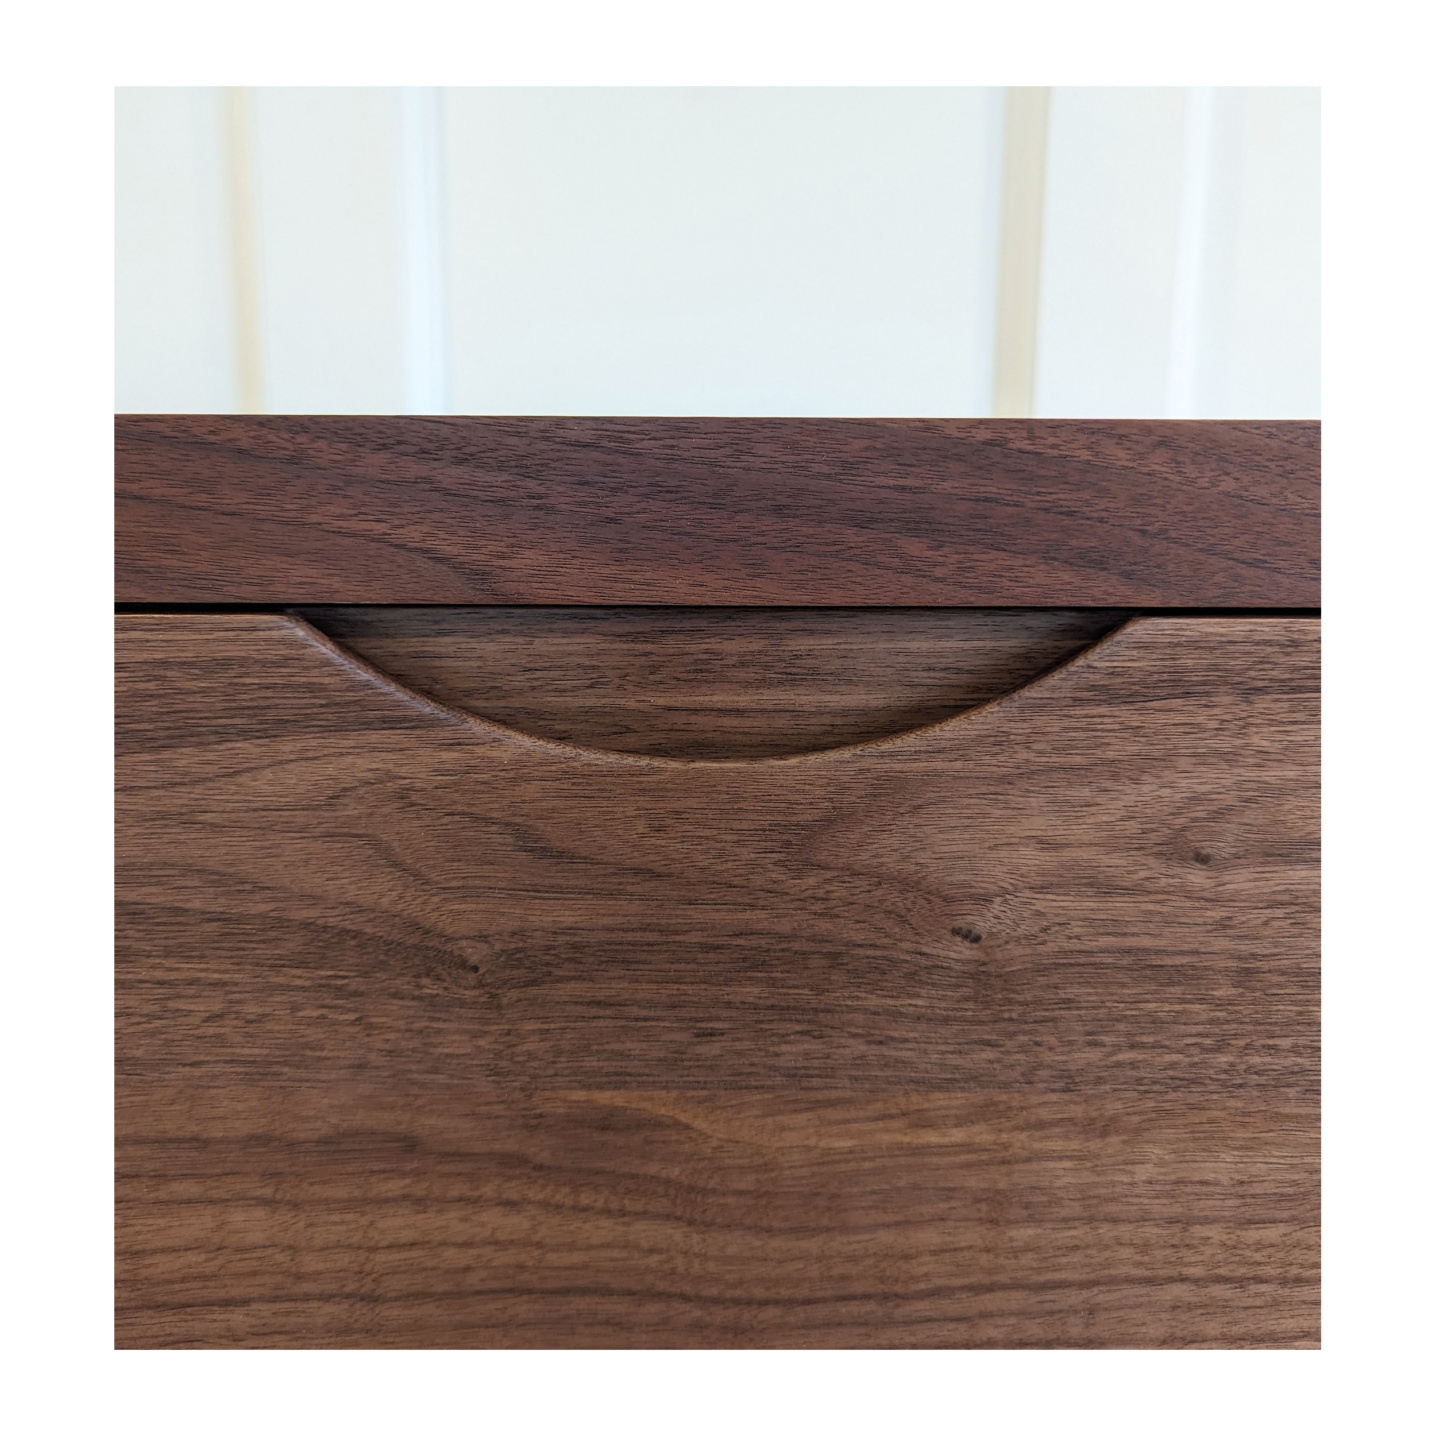 Wooden dresser handle